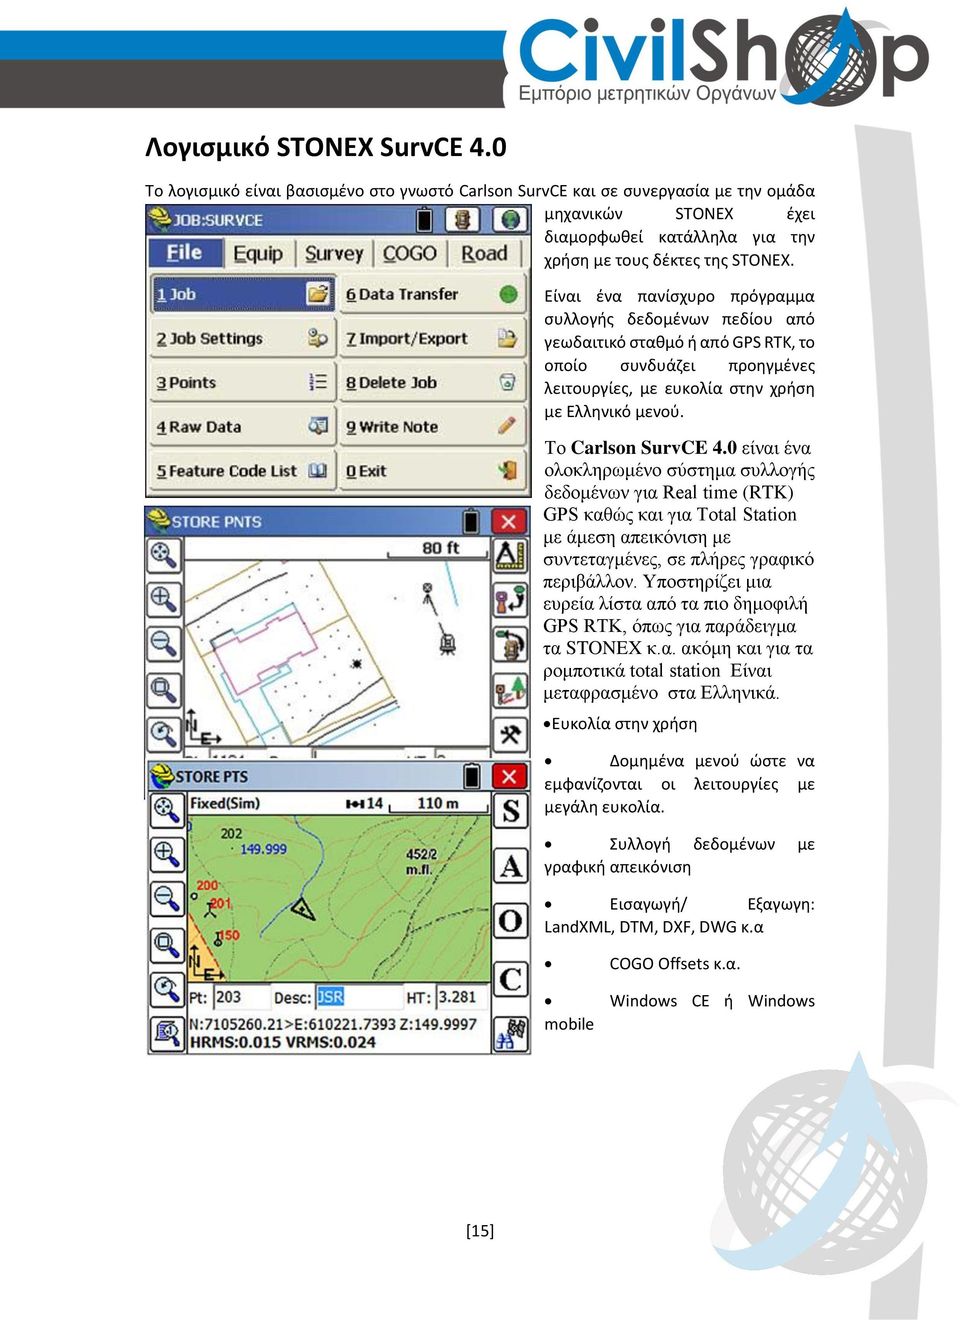 0 είναι ένα ολοκληρωμένο σύστημα συλλογής δεδομένων για Real time (RTK) GPS καθώς και για Total Station με άμεση απεικόνιση με συντεταγμένες, σε πλήρες γραφικό περιβάλλον.